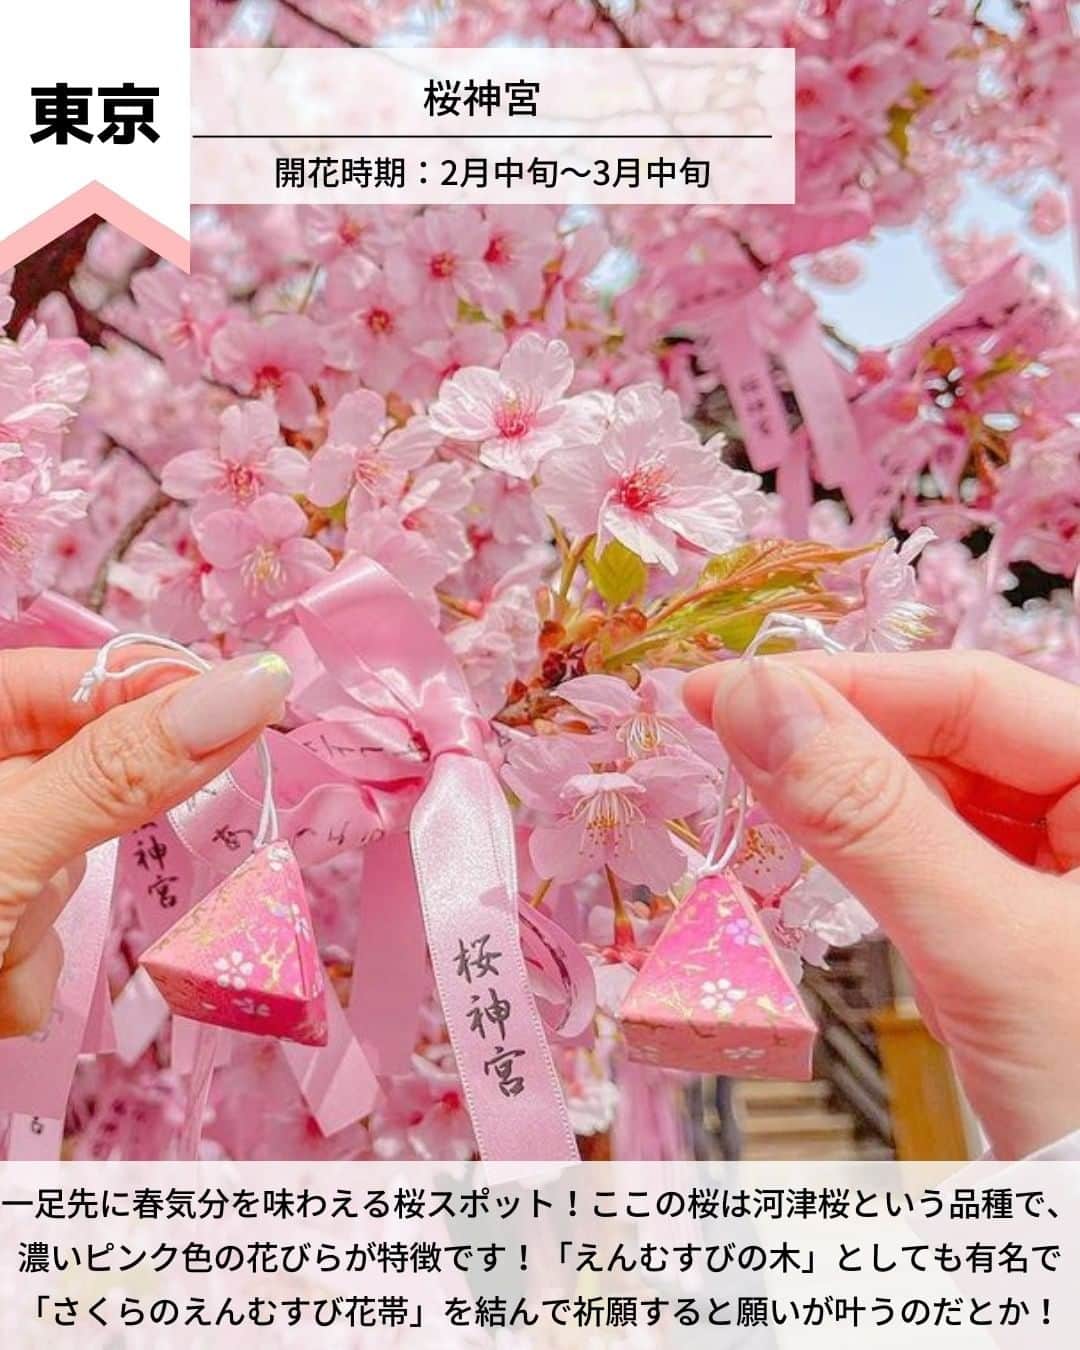 旅工房公式さんのインスタグラム写真 - (旅工房公式Instagram)「＼チェックしておきたい！桜の名所💞／   #関東 #お花見スポット #桜スポット   皆さんこんにちは！  3月に入り、少しずつ春が近づいてきましたね☀  今日はこの春行きたい！  お花見スポットを関東に絞ってまとめてみました🌸   ぜひ参考にして訪れてみてください＼(^o^)／ 💚   ━━━━━━━━━━━━━━━ ▽   お写真ありがとうございます❣   📍桜神宮 @_____mi_____15さん  一足先に春気分を味わえる桜スポット！ ここの桜は河津桜という品種で、濃いピンク色の花びらが特徴です！ 「えんむすびの木」としても有名で「さくらのえんむすび花帯」を結んで祈願すると願いが叶うのだとか！   開花時期▷2月中旬～3月中旬  アクセス▷東急田園都市線桜新町駅 北口 から徒歩2分   📍幸手権現堂桜堤 @ktr_t0205さん  約1000本のソメイヨシノが1kmにわたって咲き誇る有名な桜の名所！  周辺には菜の花畑が広がり、桜の淡いピンク色と菜の花の黄色のコントラストが◎ 思わずカメラに収めたくなる贅沢な景色です！   開花時期▷3月下旬～4月上旬  アクセス▷首都圏中央連絡自動車道幸手ICから国道4号線経由約10分   📍千鳥ヶ淵 @emiri_chibaさん  皇居のお濠を彩る桜並木が美しい定番のお花見スポット！  ソメイヨシノをはじめとする約260本の桜が咲き誇ります！  ボートに乗って水上から桜を楽しむことができ、外国人観光客からも人気の場所です！  開花時期▷3月下旬～4月上旬  アクセス▷半蔵門駅から徒歩5分   📍目黒川 @chee.tripさん  池尻大橋駅付近から約4kmに渡り桜並木が続く、都内でも有名な桜スポット！ 今年は桜まつりなどのイベントも開催され、日没後はライトアップやぼんぼりの点灯もされる予定です！   開花時期▷3月下旬～4月上旬  アクセス▷JR目黒駅から徒歩約10分   📍成田市さくらの山 @yuuki713.canon さん  飛行機の離着陸を一緒に楽しめる珍しいお花見スポット！  成田空港近くにあるここは「飛行機の見える丘」としても有名です！  咲き誇る約500本の桜の木の下で、飛行機を眺めることができますよ◎   開花時期▷3月下旬～4月上旬  アクセス▷東関東自動車道成田ICから車で約10分   📍小田原城址公園 @wifoliasoi さん  年間を通して様々な花や植物を楽しめる小田原城址公園！  桜の時期には約300本が開花し、小田原城と桜の美しい組み合わせを見ることができます！ 日没後は、例年ライトアップも開催されています！   開花時期▷ 3月下旬～4月上旬  アクセス▷小田原駅から徒歩10分   海外・国内問わず、素敵なスポットやグルメ、アイテムの写真にはぜひ #旅工房 や @tabikobo をタグ付けして下さい💕   ━━━━━━━━━━━━━━━   #旅工房 #旅pocket #女子旅 #お花見 #桜の名所 #桜 #お花見 #花見 #桜ライトアップ #桜まつり #桜祭り #桜吹雪 #桜巡り  #お花見デート #お花見ピクニック #お花見散歩 #お花見ランチ #お花見パーティー #お花見サイクリング #お花見ドライブ #東京桜 #東京桜スポット #桜並木 #夜桜 #夜桜ライトアップ #春のお出かけ」3月6日 12時29分 - tabikobo